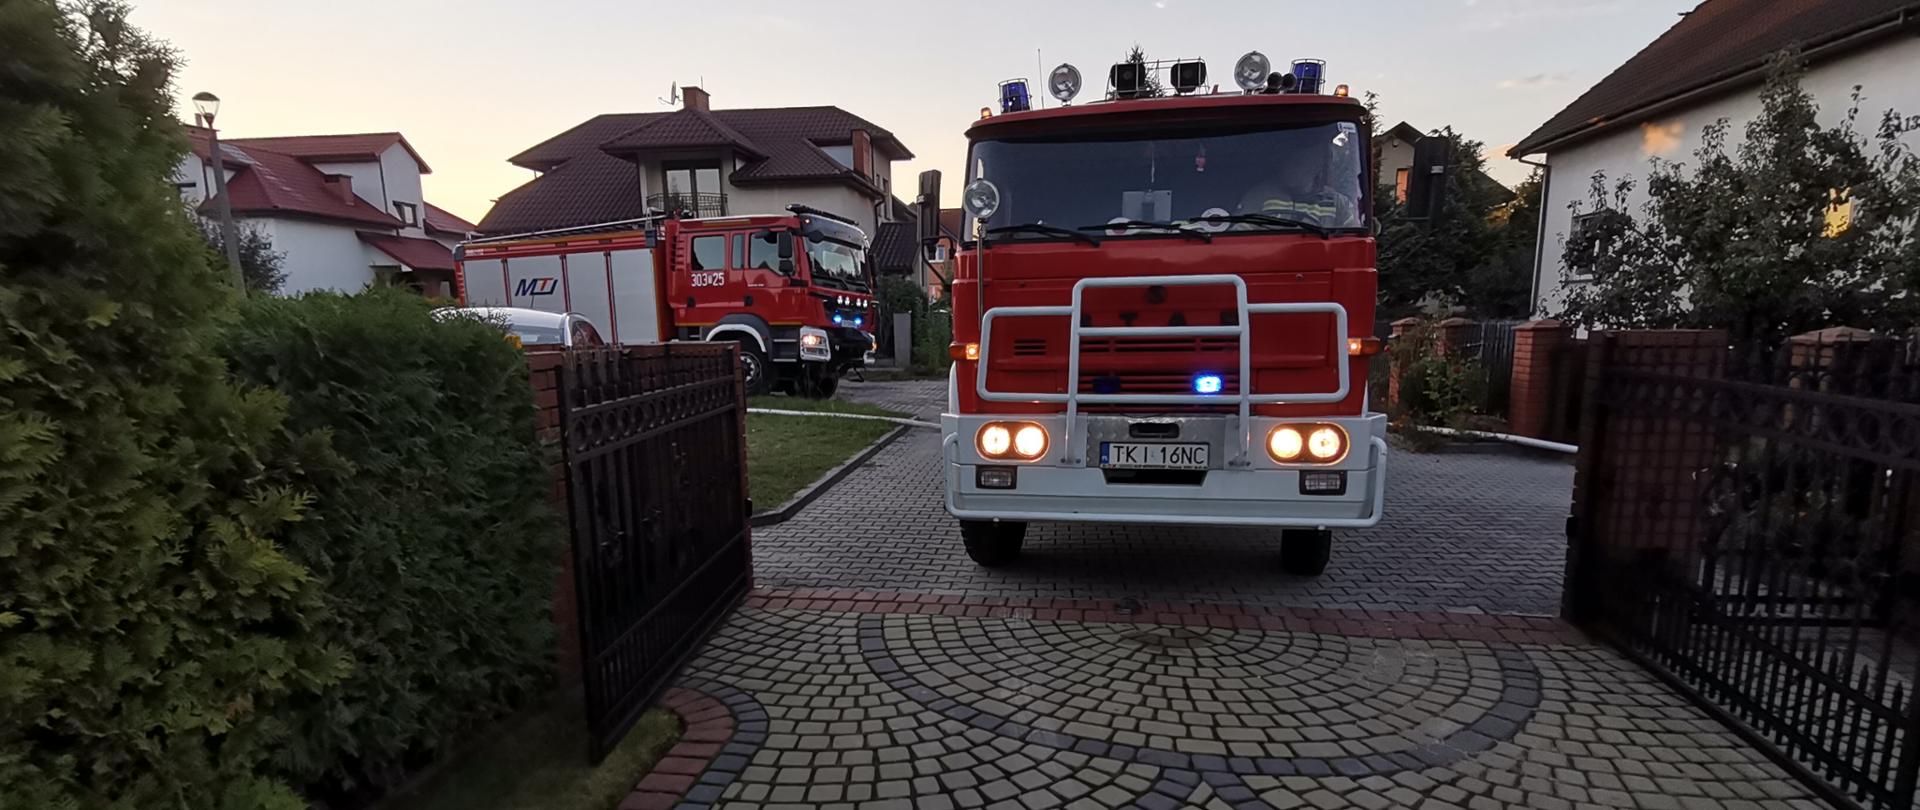 Zdjęcie przedstawia dwa samochody pożarnicze, które stoją przy wjeździe na prywatną posesję gdzie wybuchł pożar.